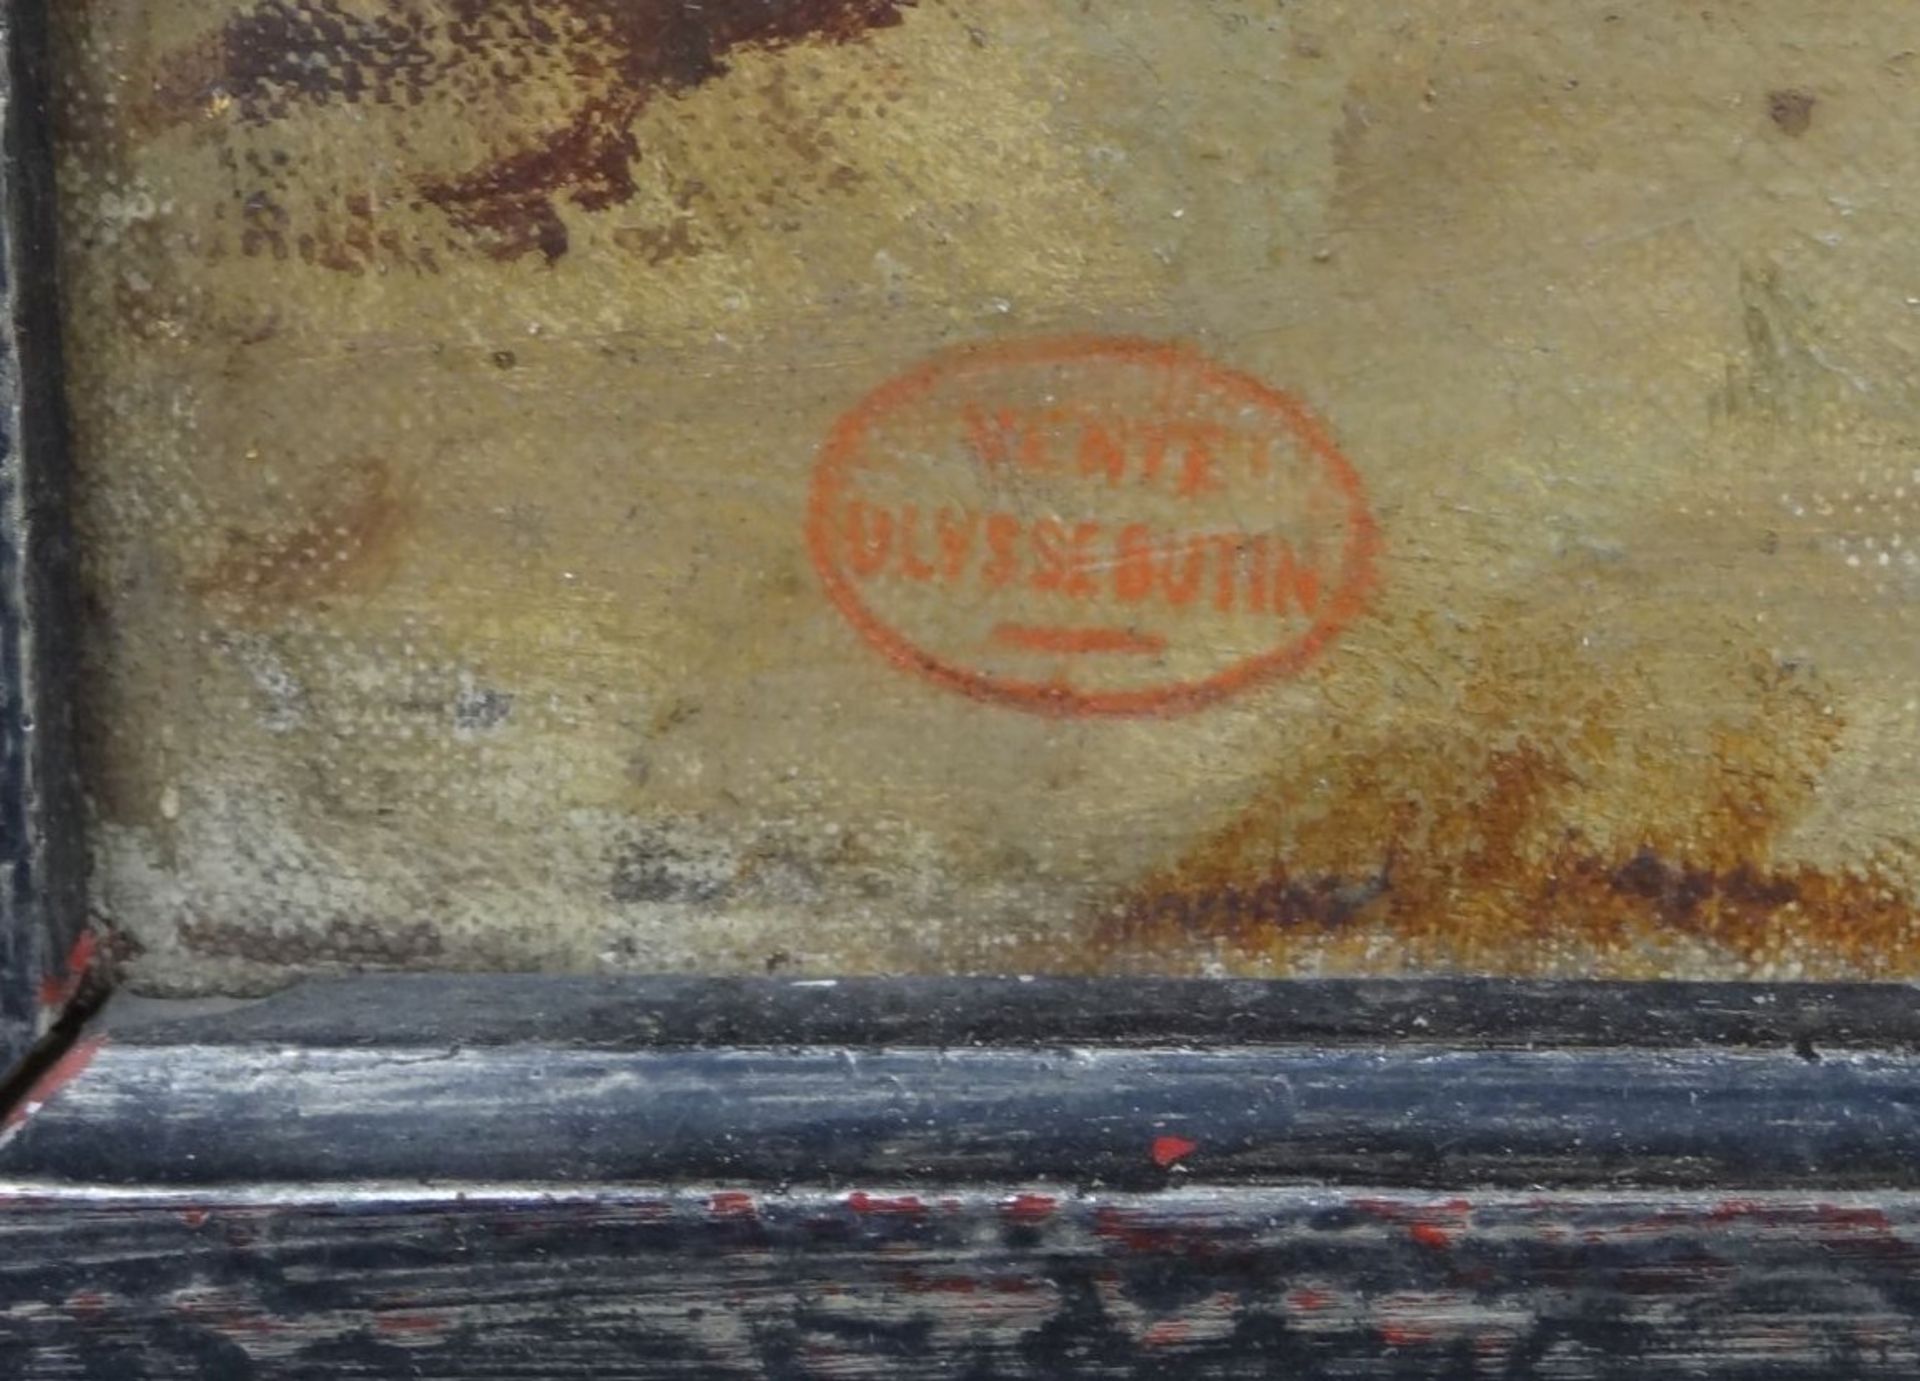 anonymes gr. Gemälde, roter Stempel "vente ulysses butin", Kirchenende mit Grabsteinen, Öl/Leinen, - Bild 3 aus 4